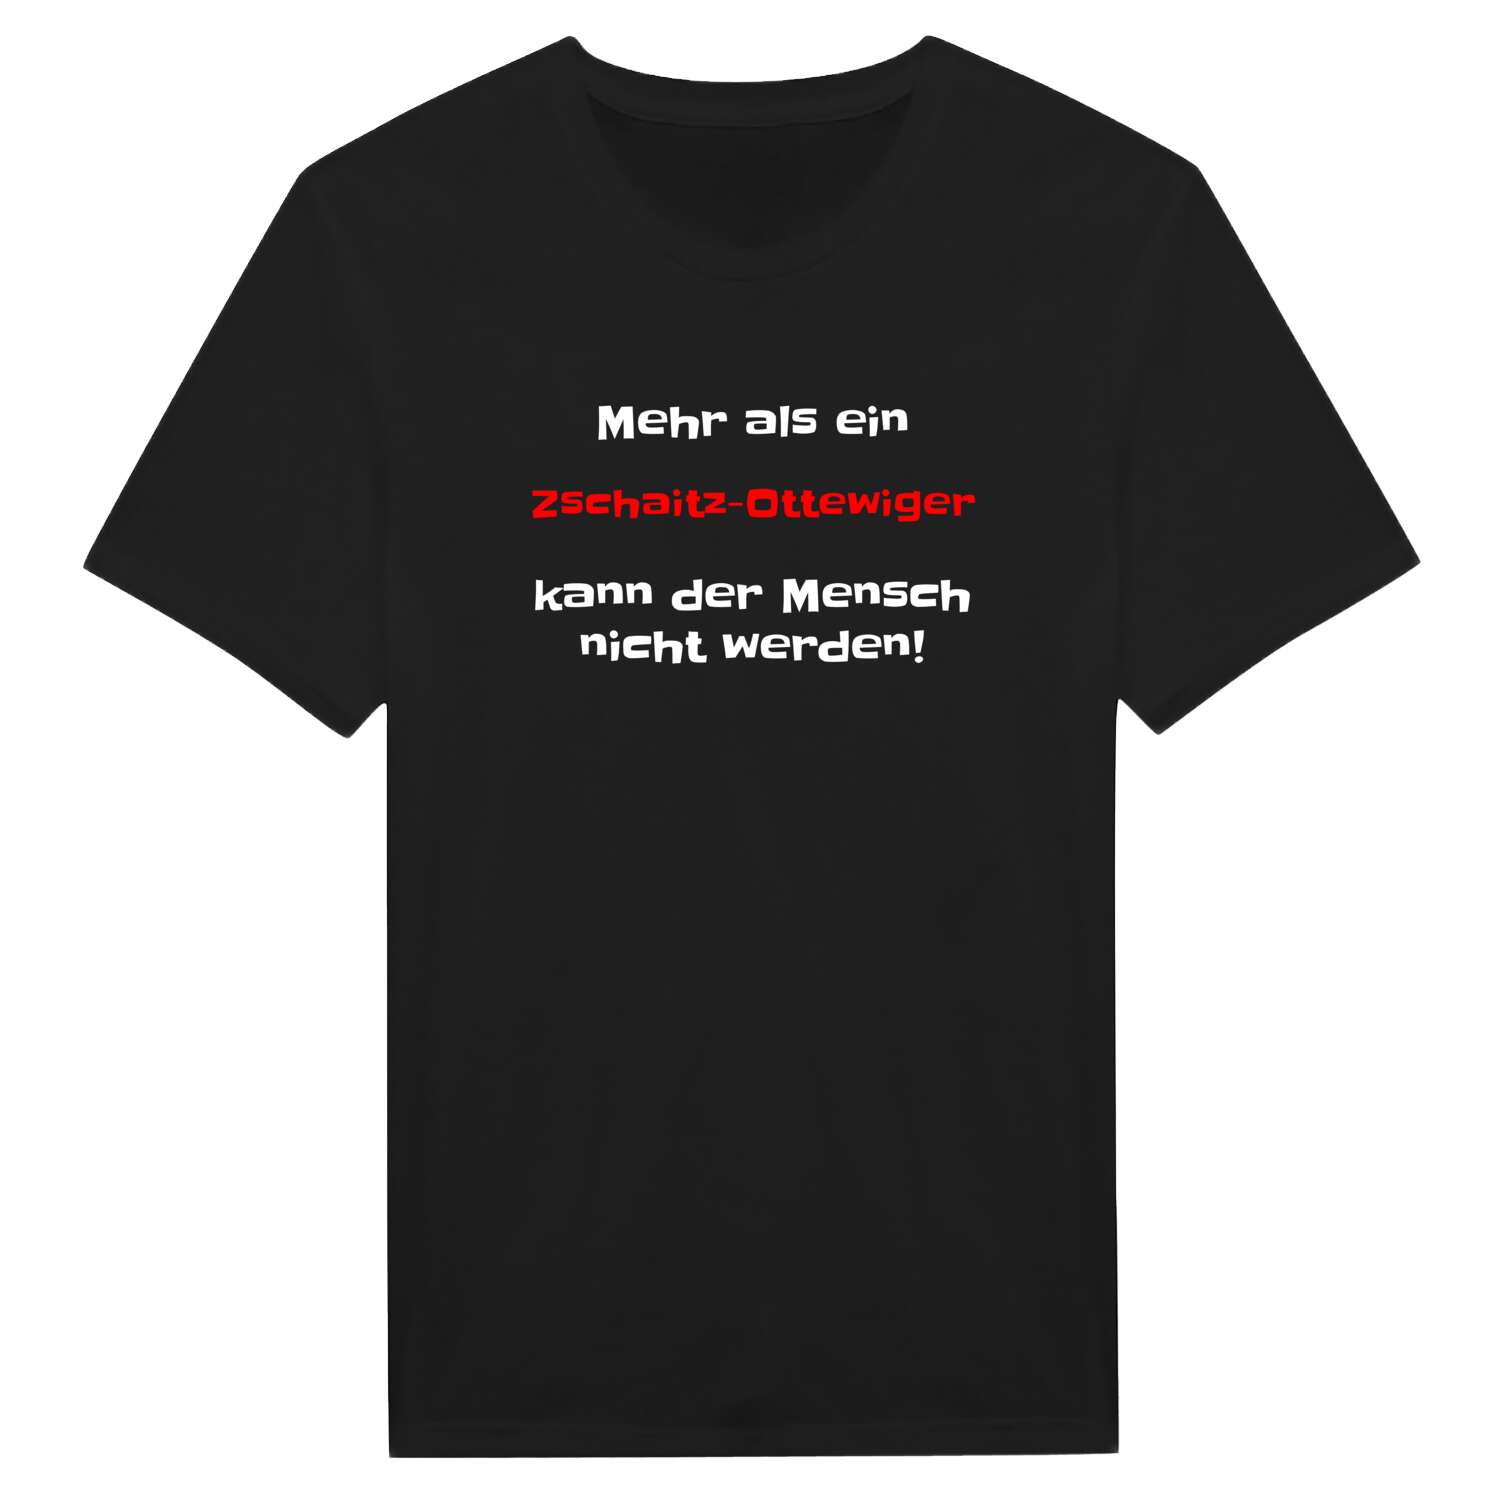 Zschaitz-Ottewig T-Shirt »Mehr als ein«